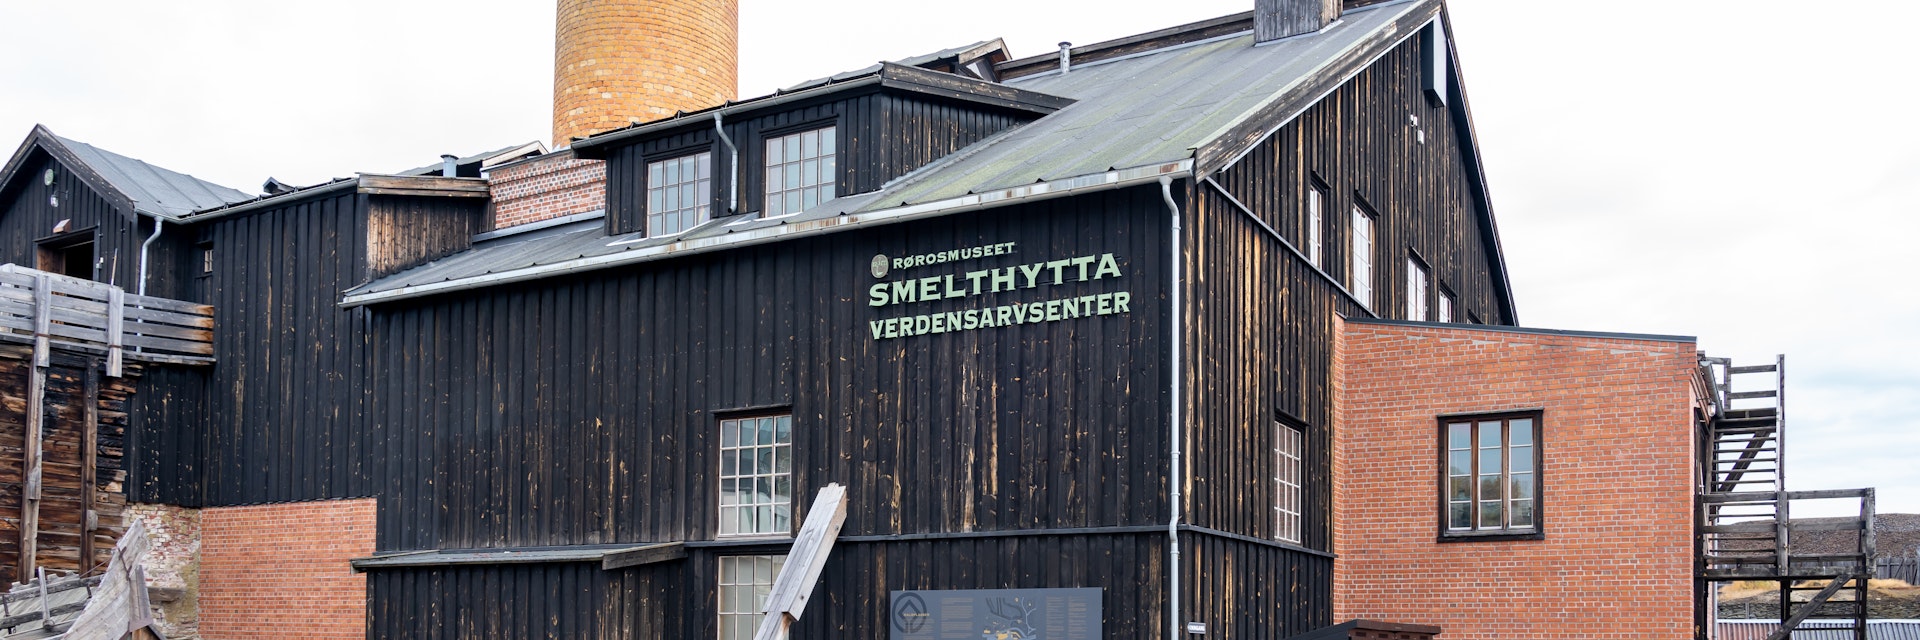 Smelthytta in Roros, Norway.